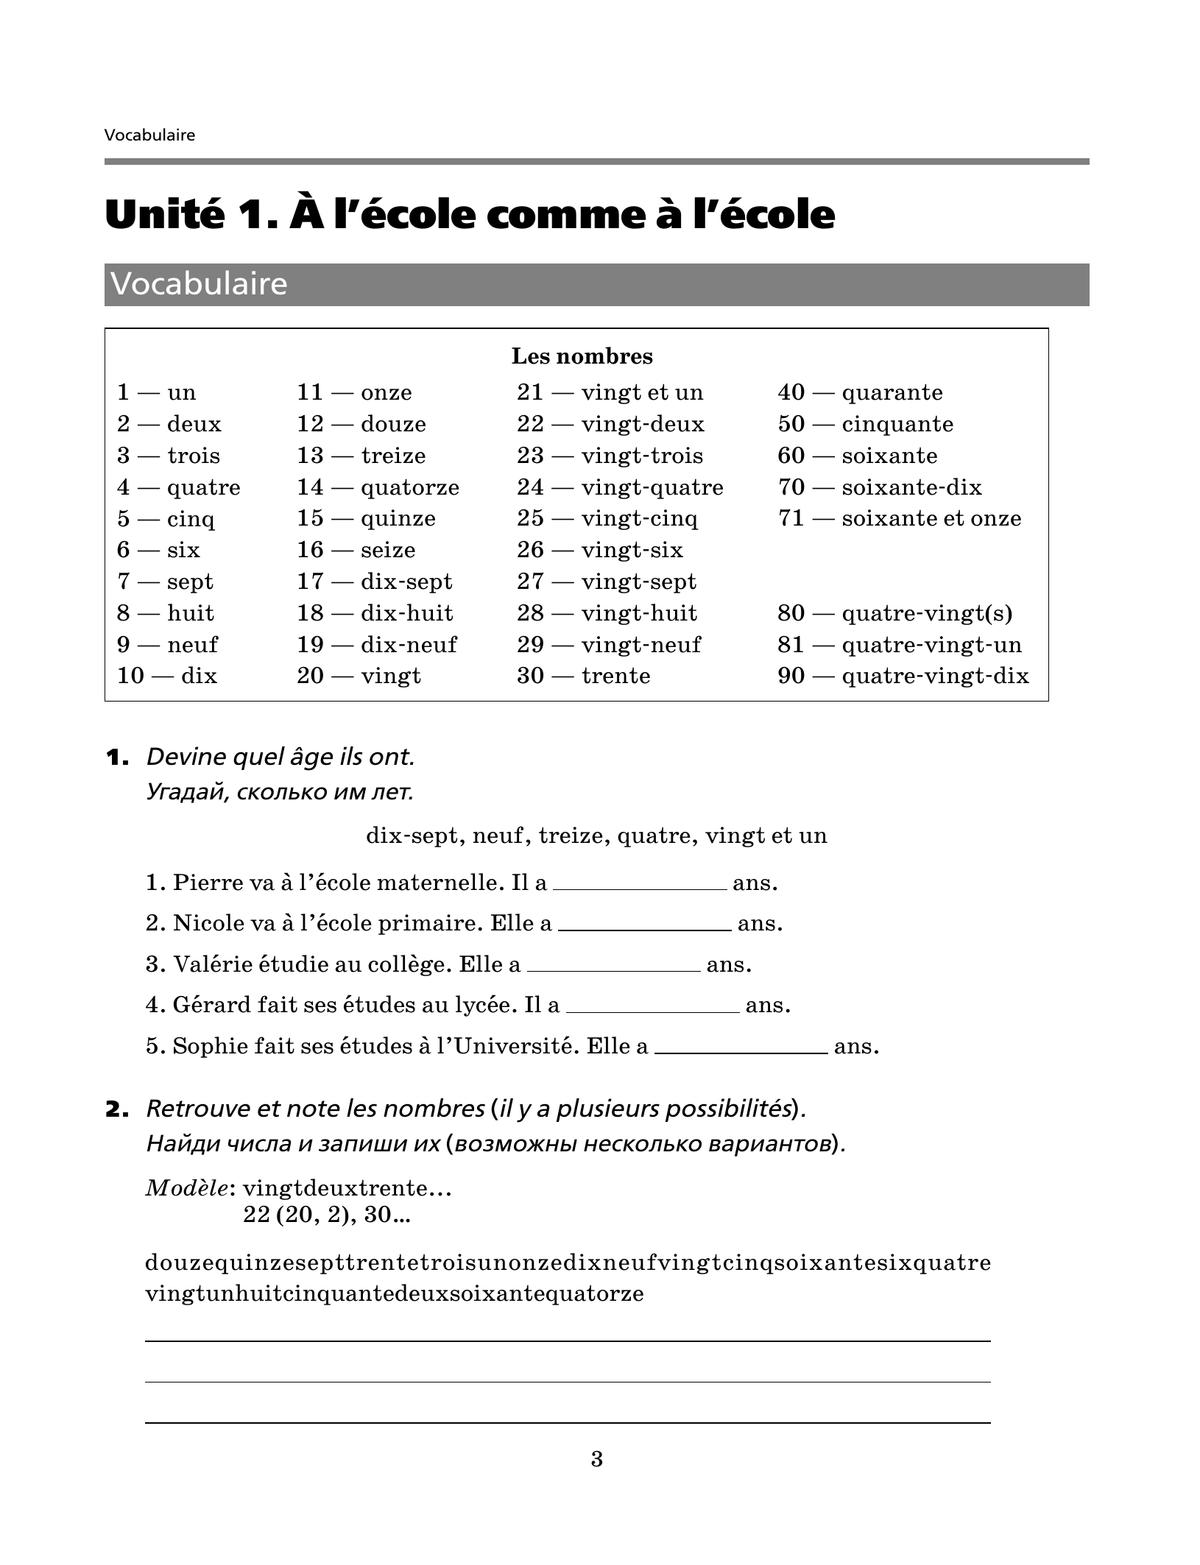 Французский язык. Второй иностранный язык. 6 класс. Рабочая тетрадь и контрольные работы 4